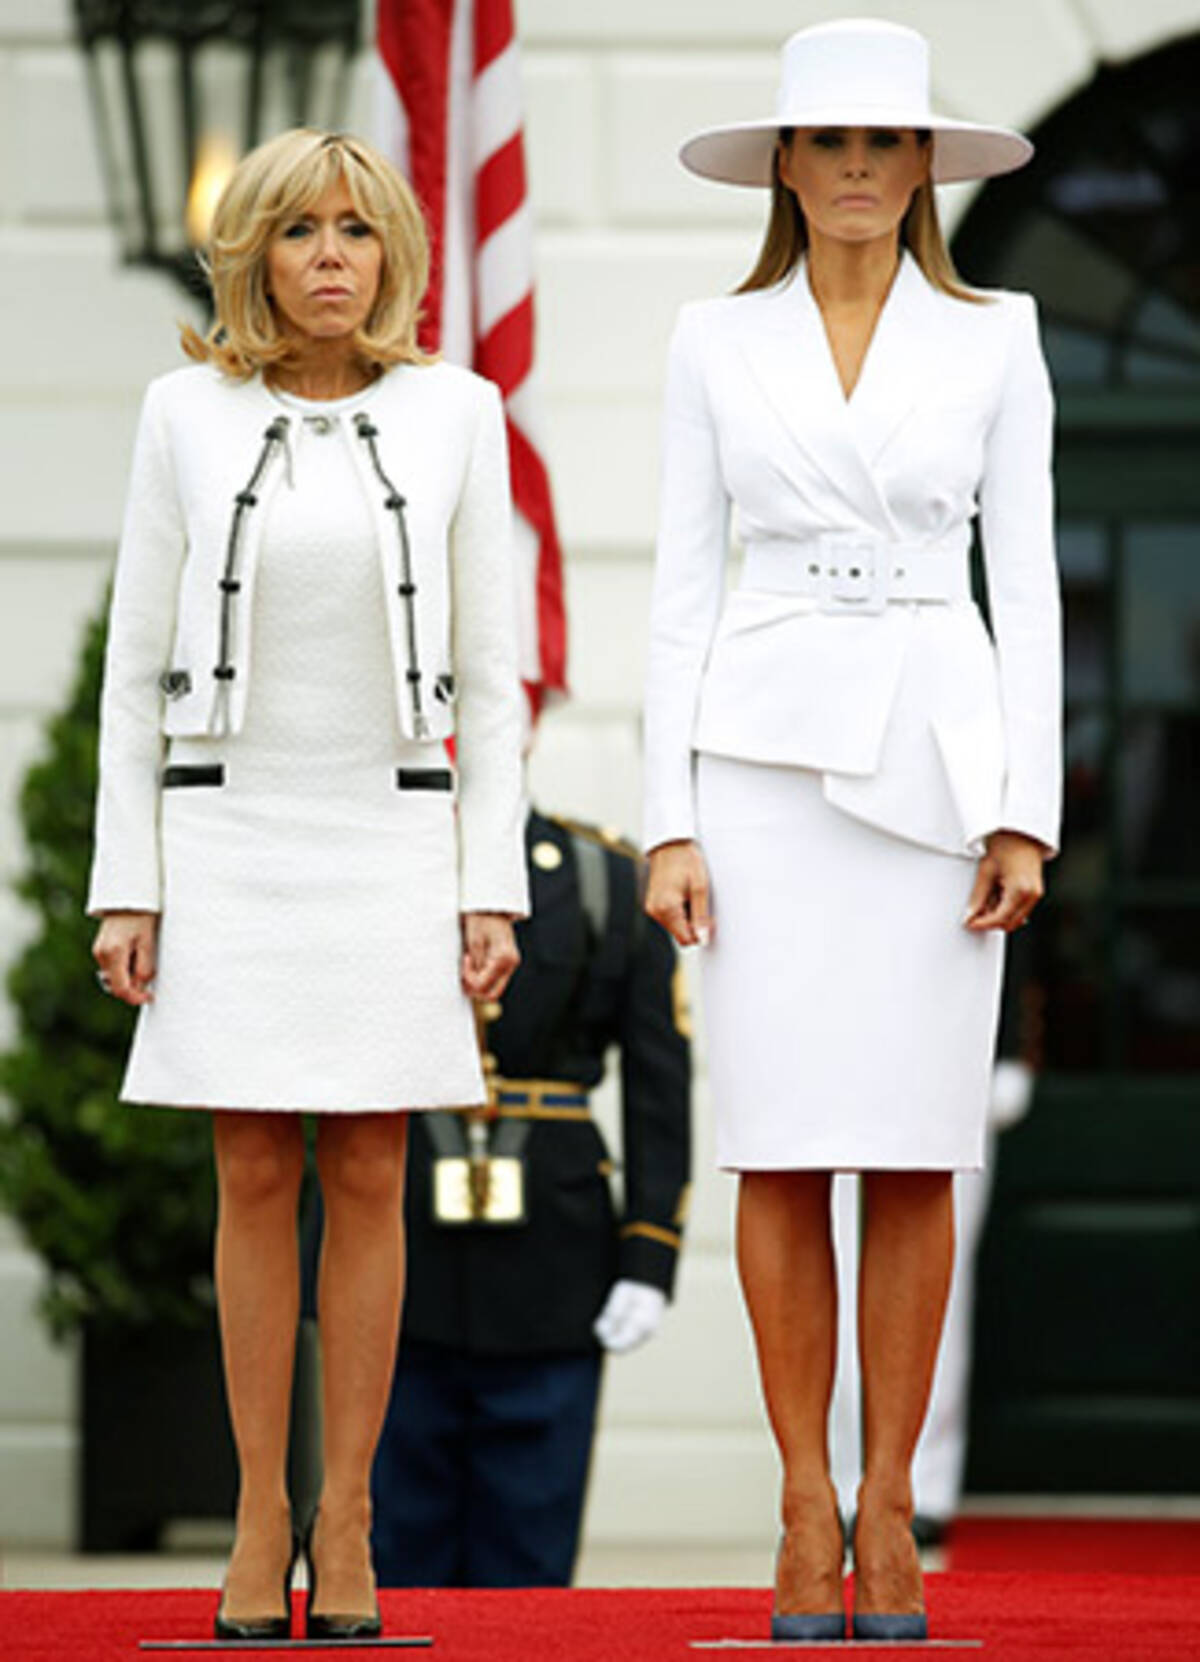 トランプ夫人と仏大統領夫人が美脚対決 18年4月25日 エキサイトニュース